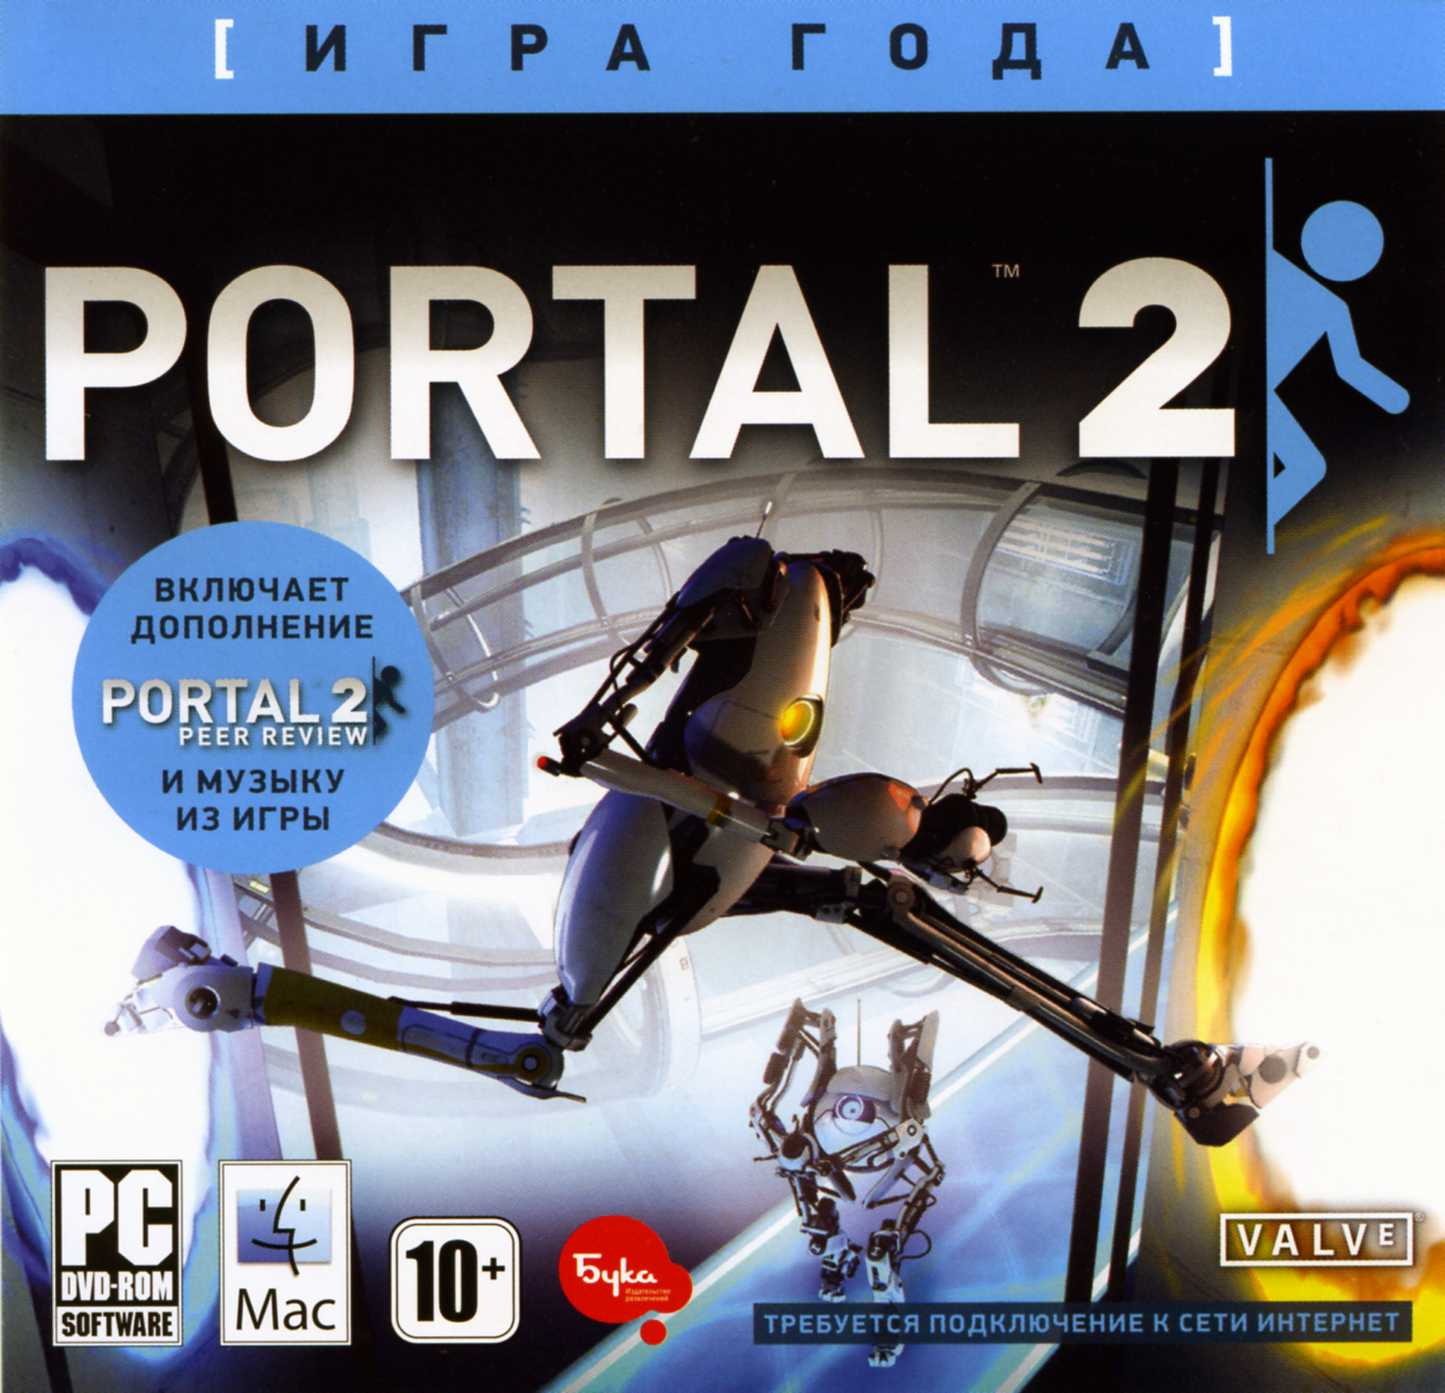 Portal 2 русификатор бука фото 77